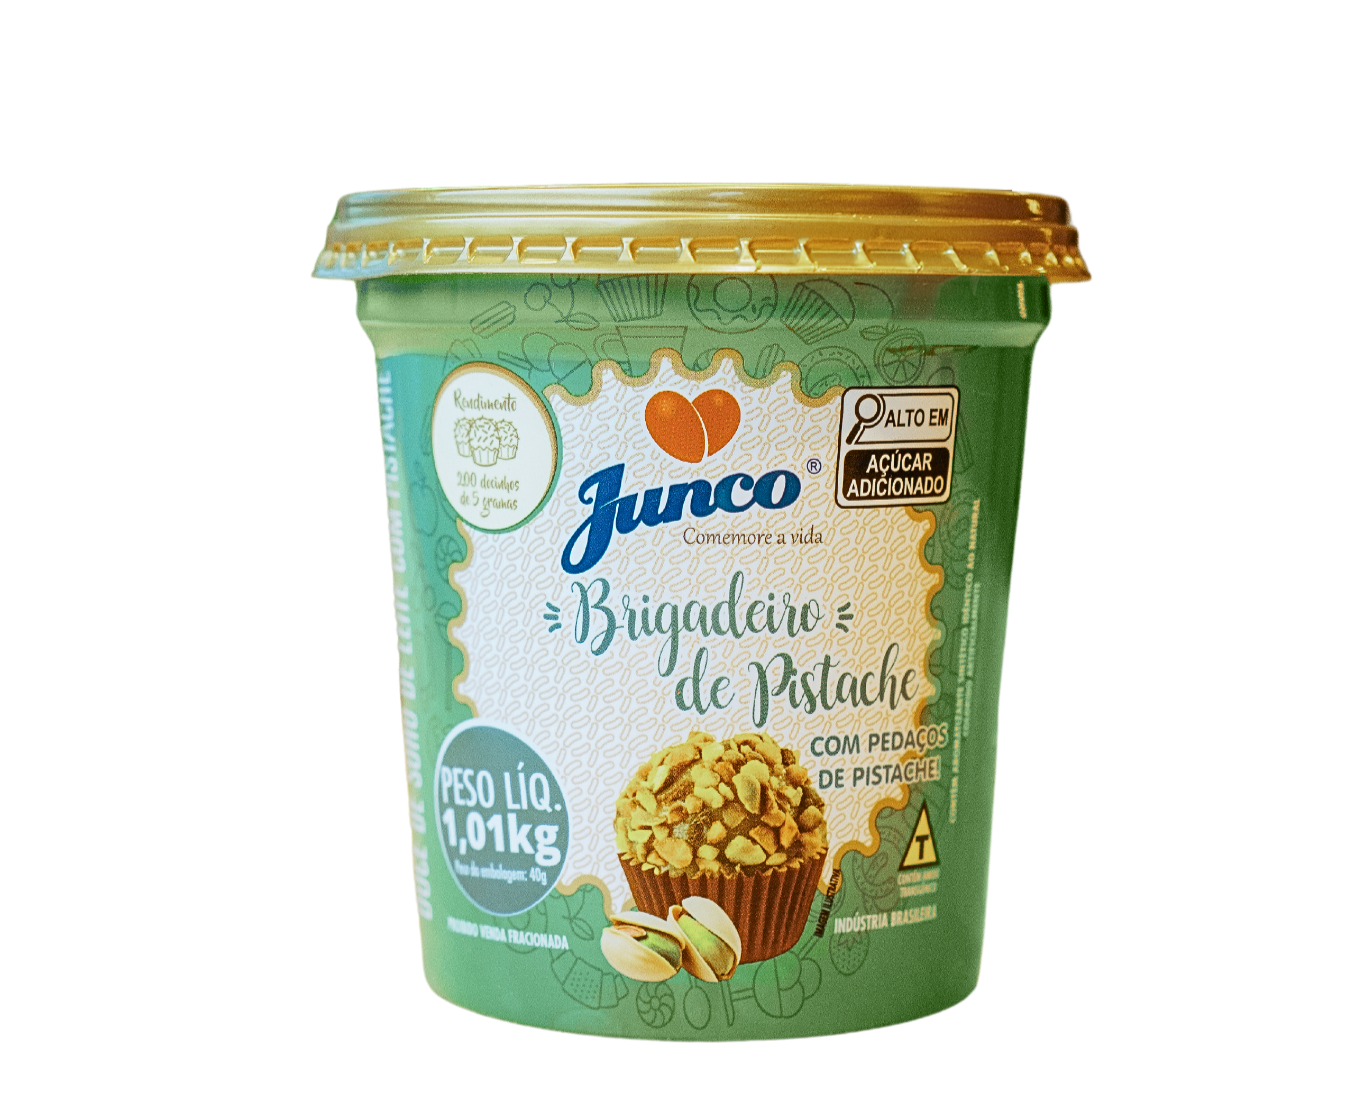 Brigadeiro de pistache - Junco